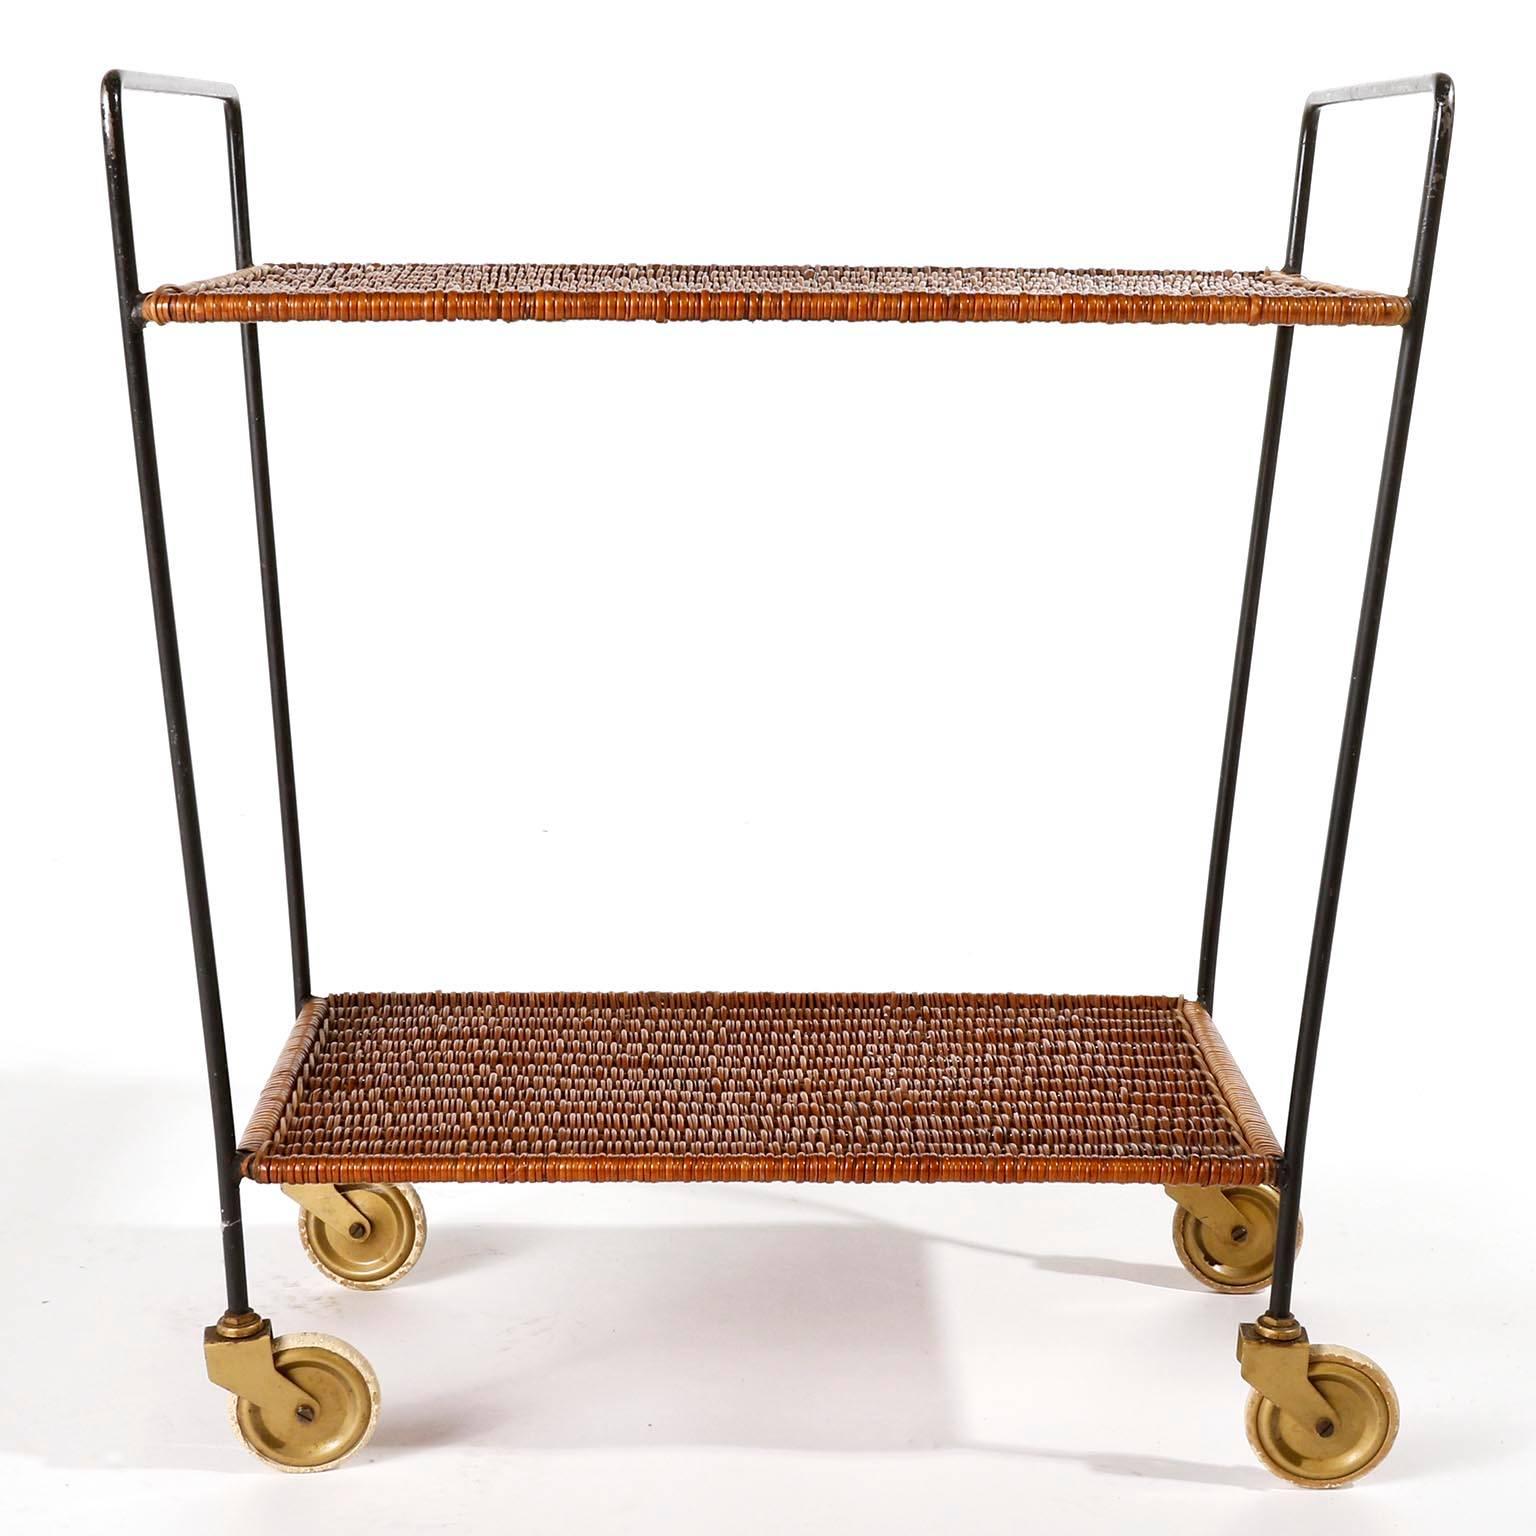 Magnifique table roulante ou chariot à thé composé d'une structure métallique peinte en noir et d'étagères en osier, fabriqué au milieu du siècle en Autriche, vers 1950.
L'osier est en excellent état. Usure d'usage sur le métal, en particulier sur